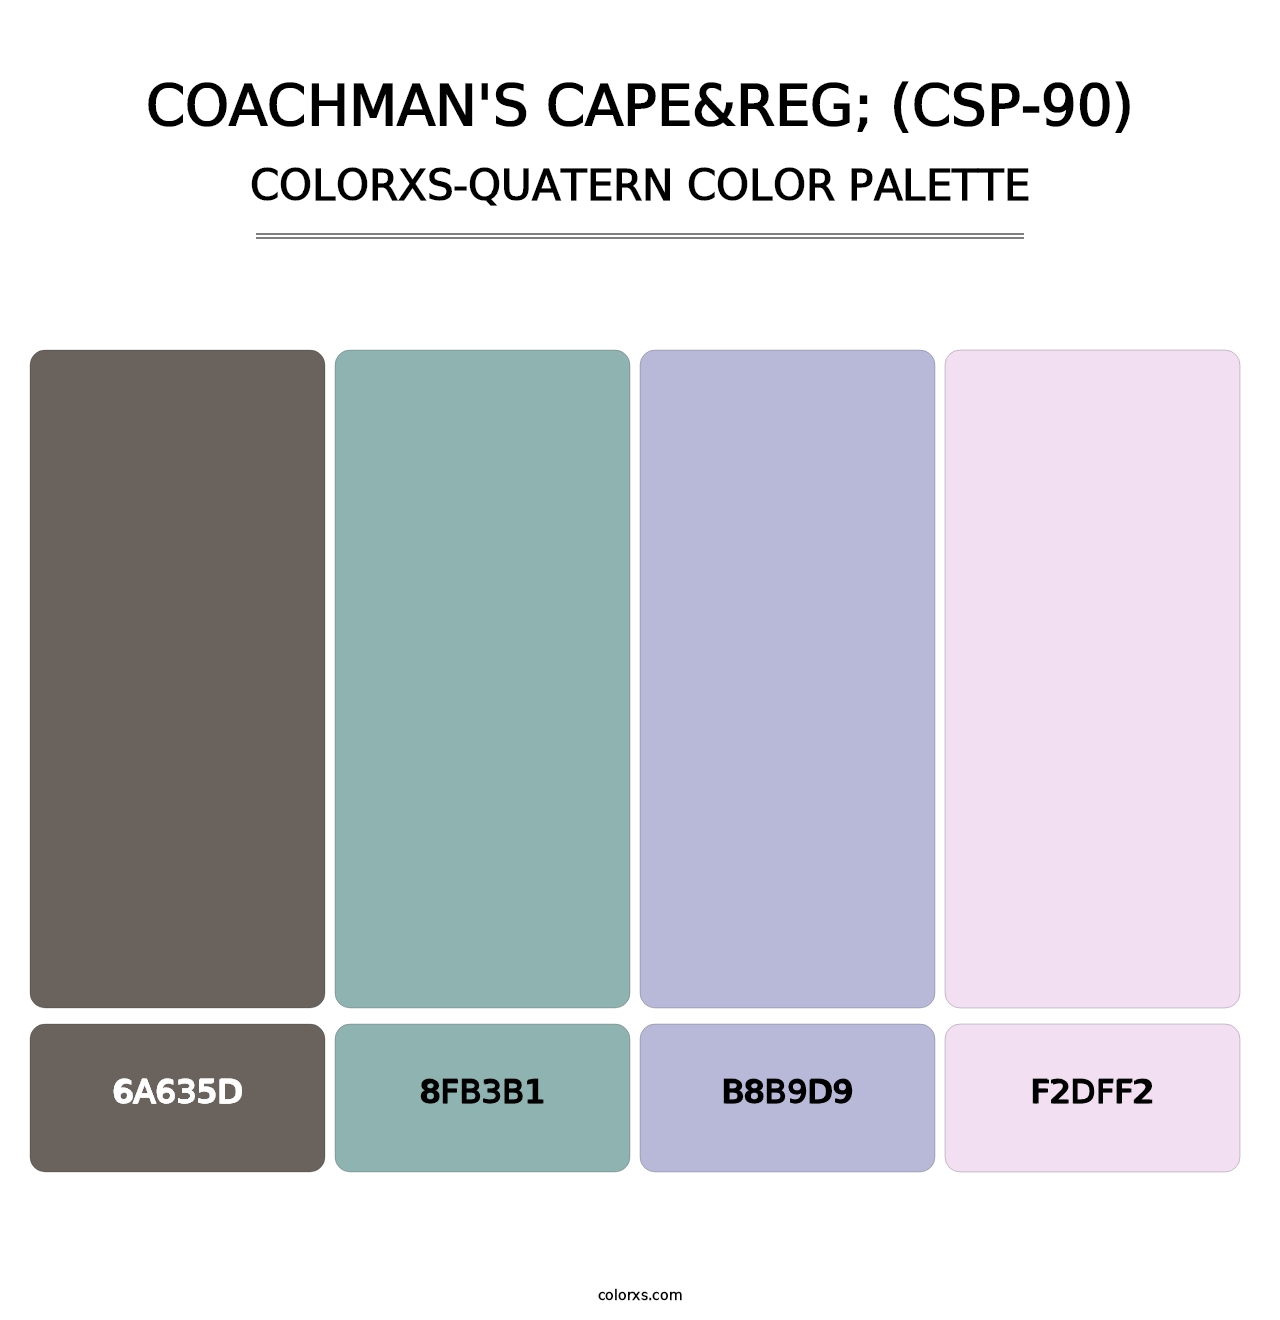 Coachman's Cape&reg; (CSP-90) - Colorxs Quatern Palette